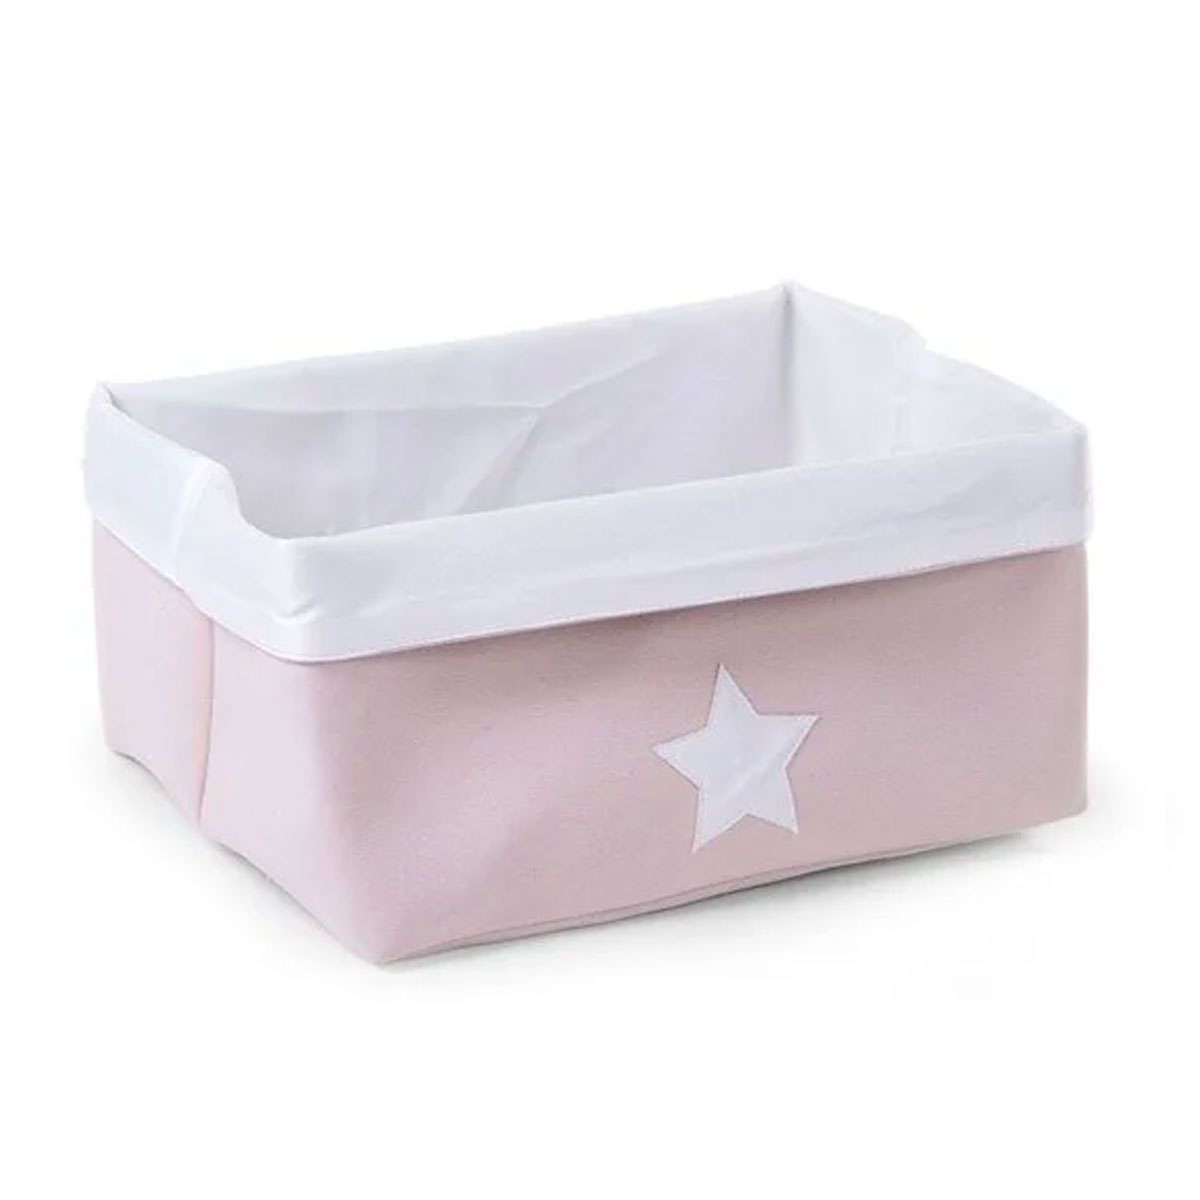 Κουτί αποθήκευσης καμβάς 40X30X20cm pink-white Childhome